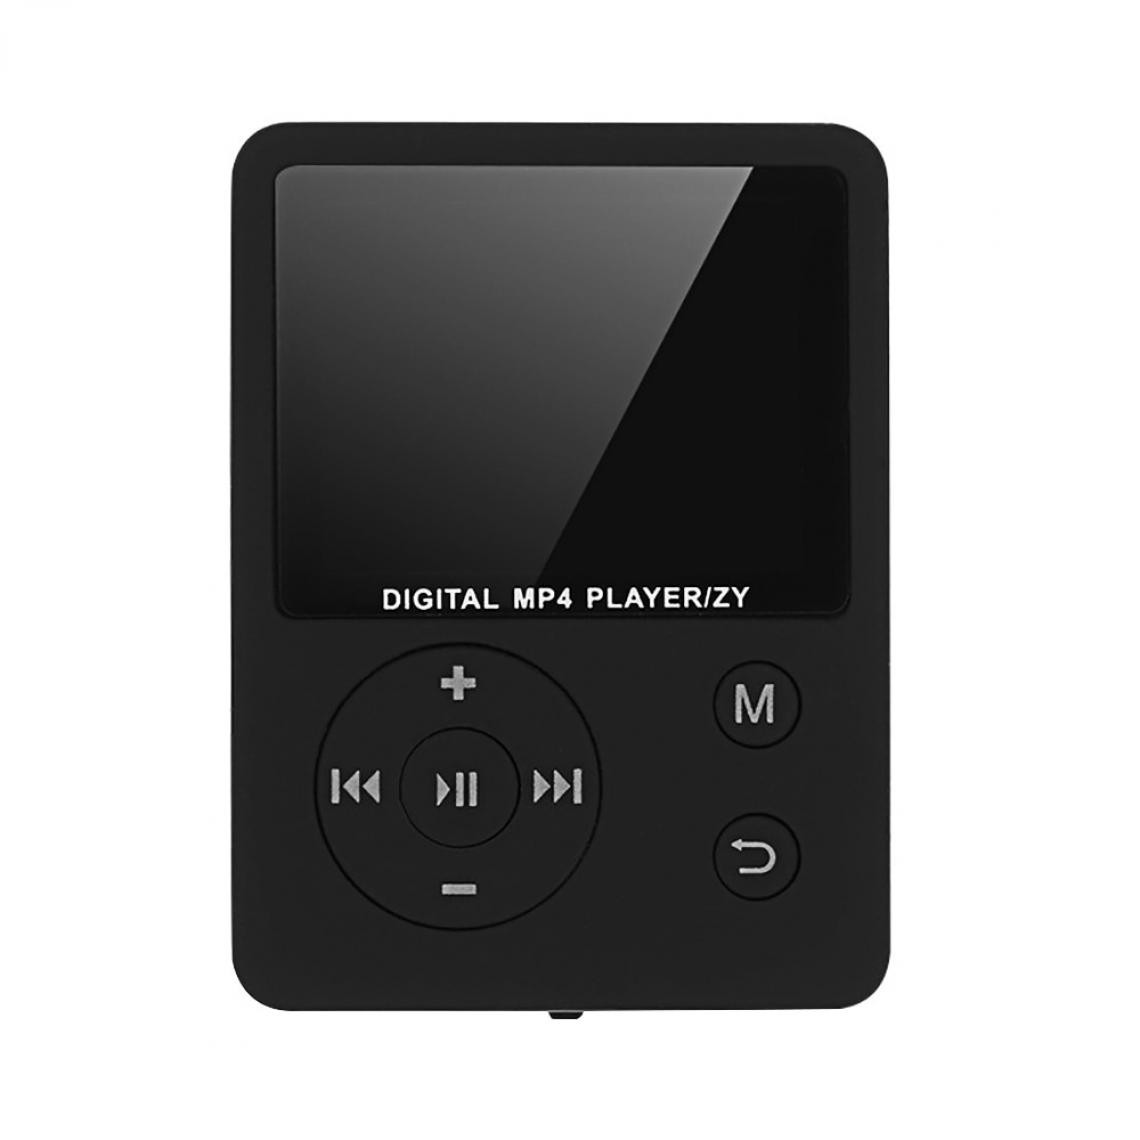 Universal - Écran tactile de 1,8 pouces, lecteur MP3, lecteur de musique Bluetooth, haut-parleur intégré, support FM, vidéo, vidéo, e-book, haut-parleur HiFi. - Radio, lecteur CD/MP3 enfant